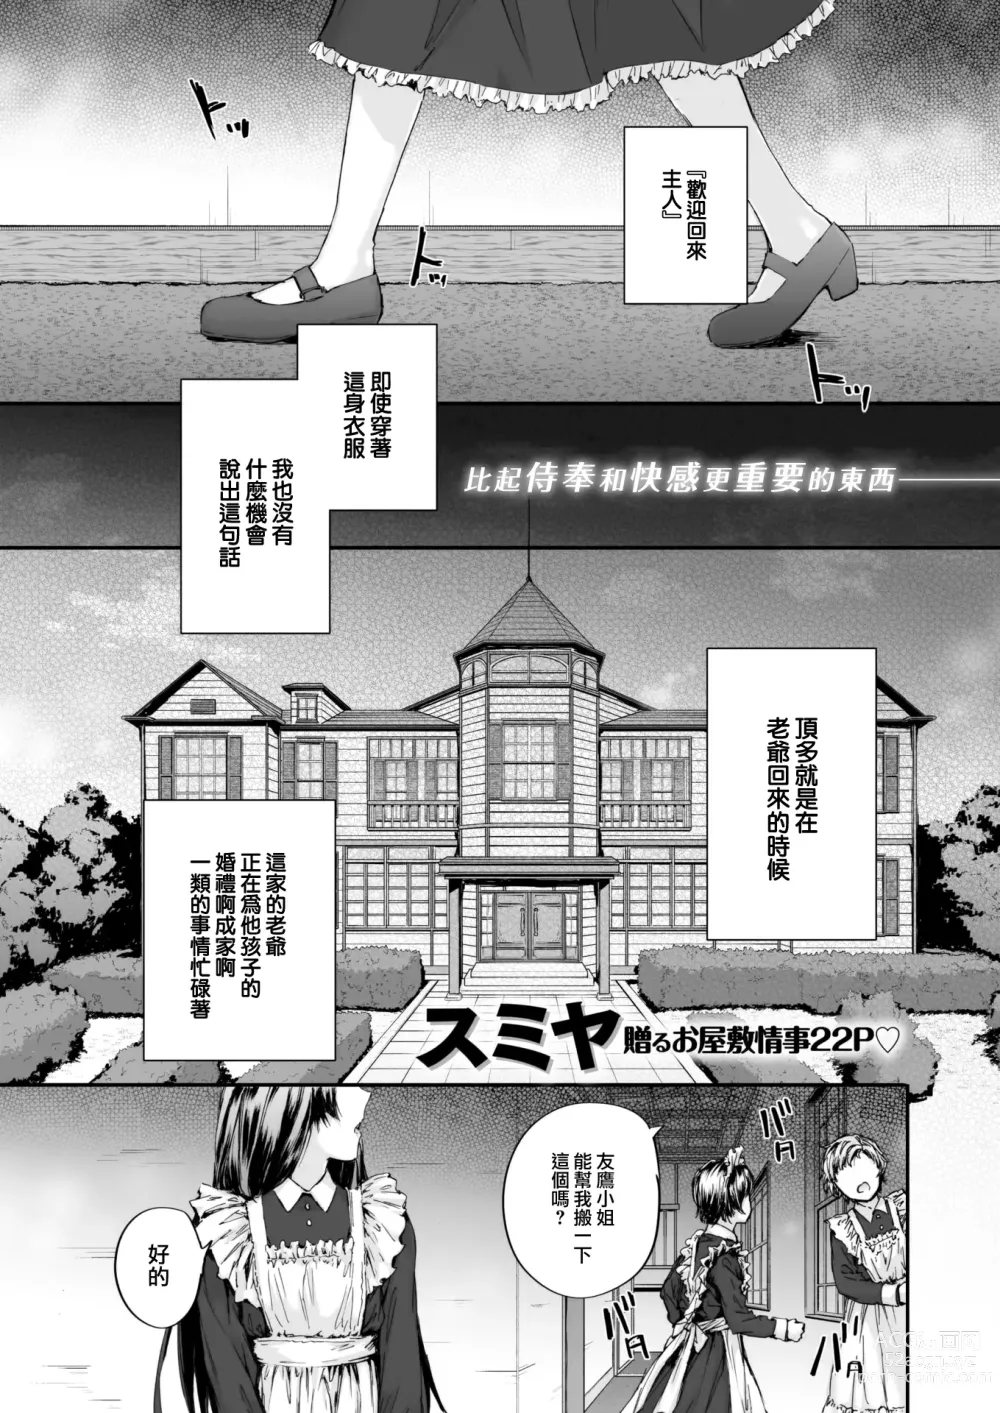 Page 2 of manga Haken Maid no Tomotakasan